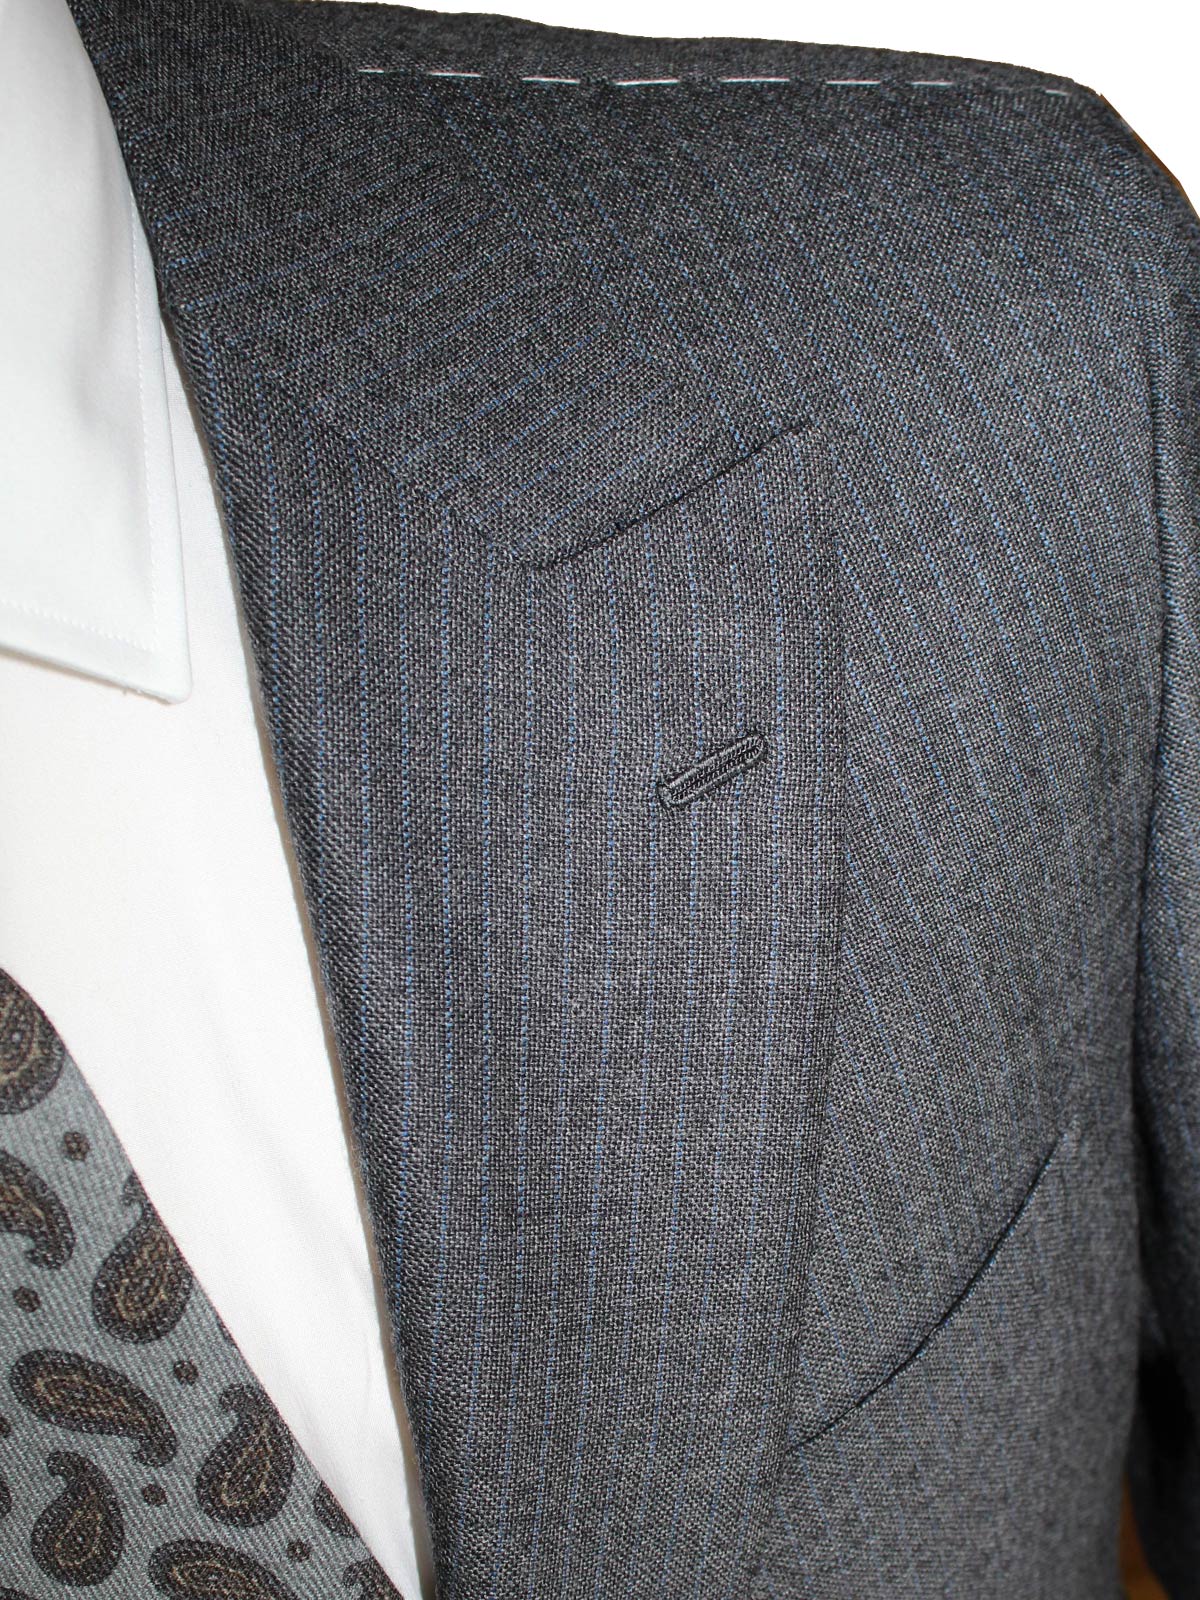 Kiton Wool Men Suit Gray Blue 2 Button Peak Lapel EUR 50 - US 40 R8 SALE